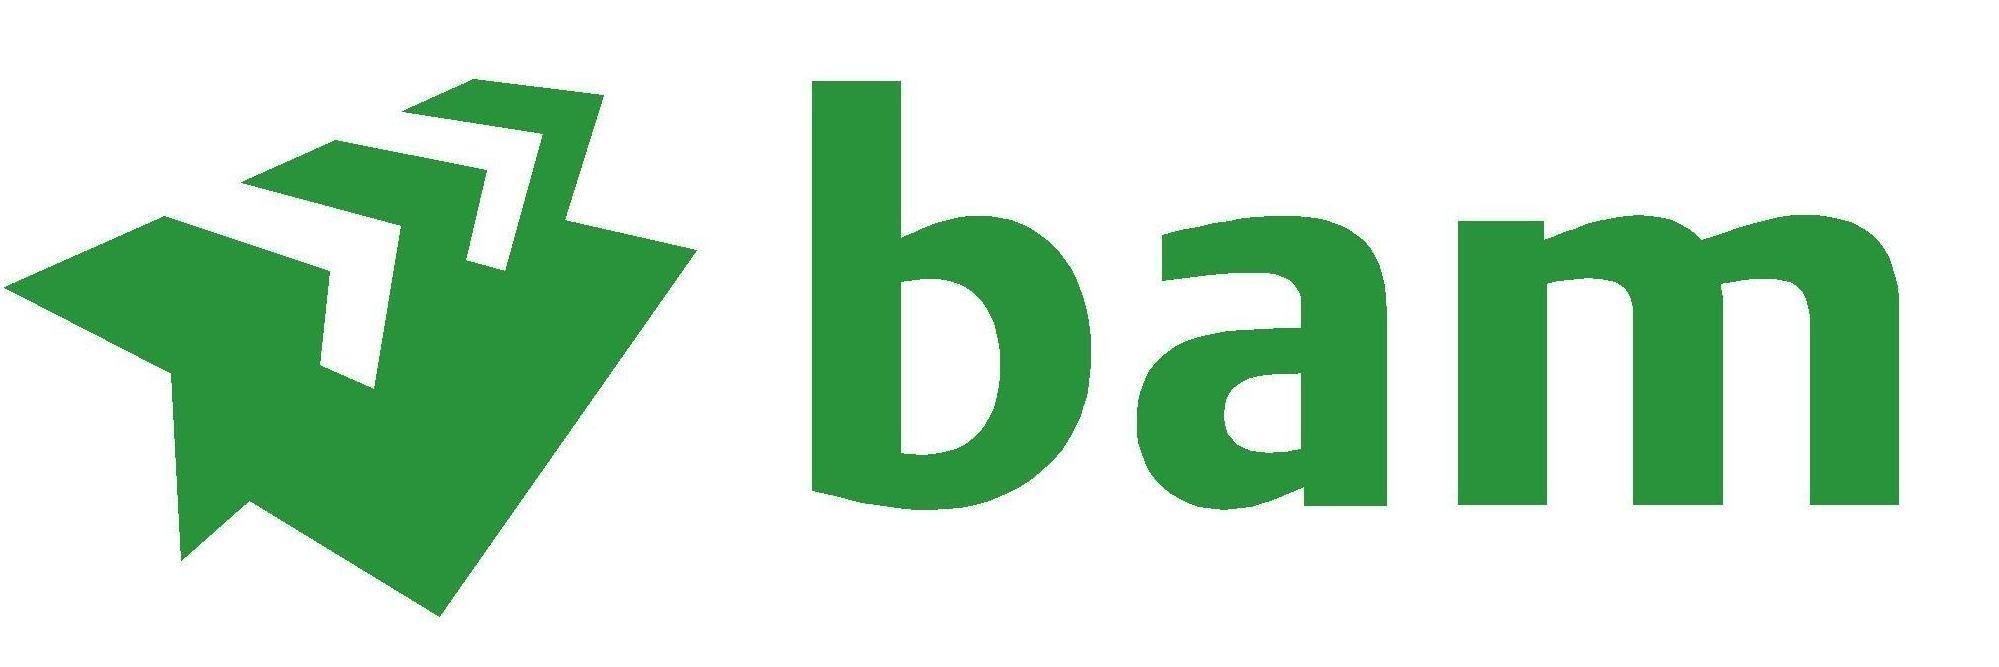 Bam Logo Logodix